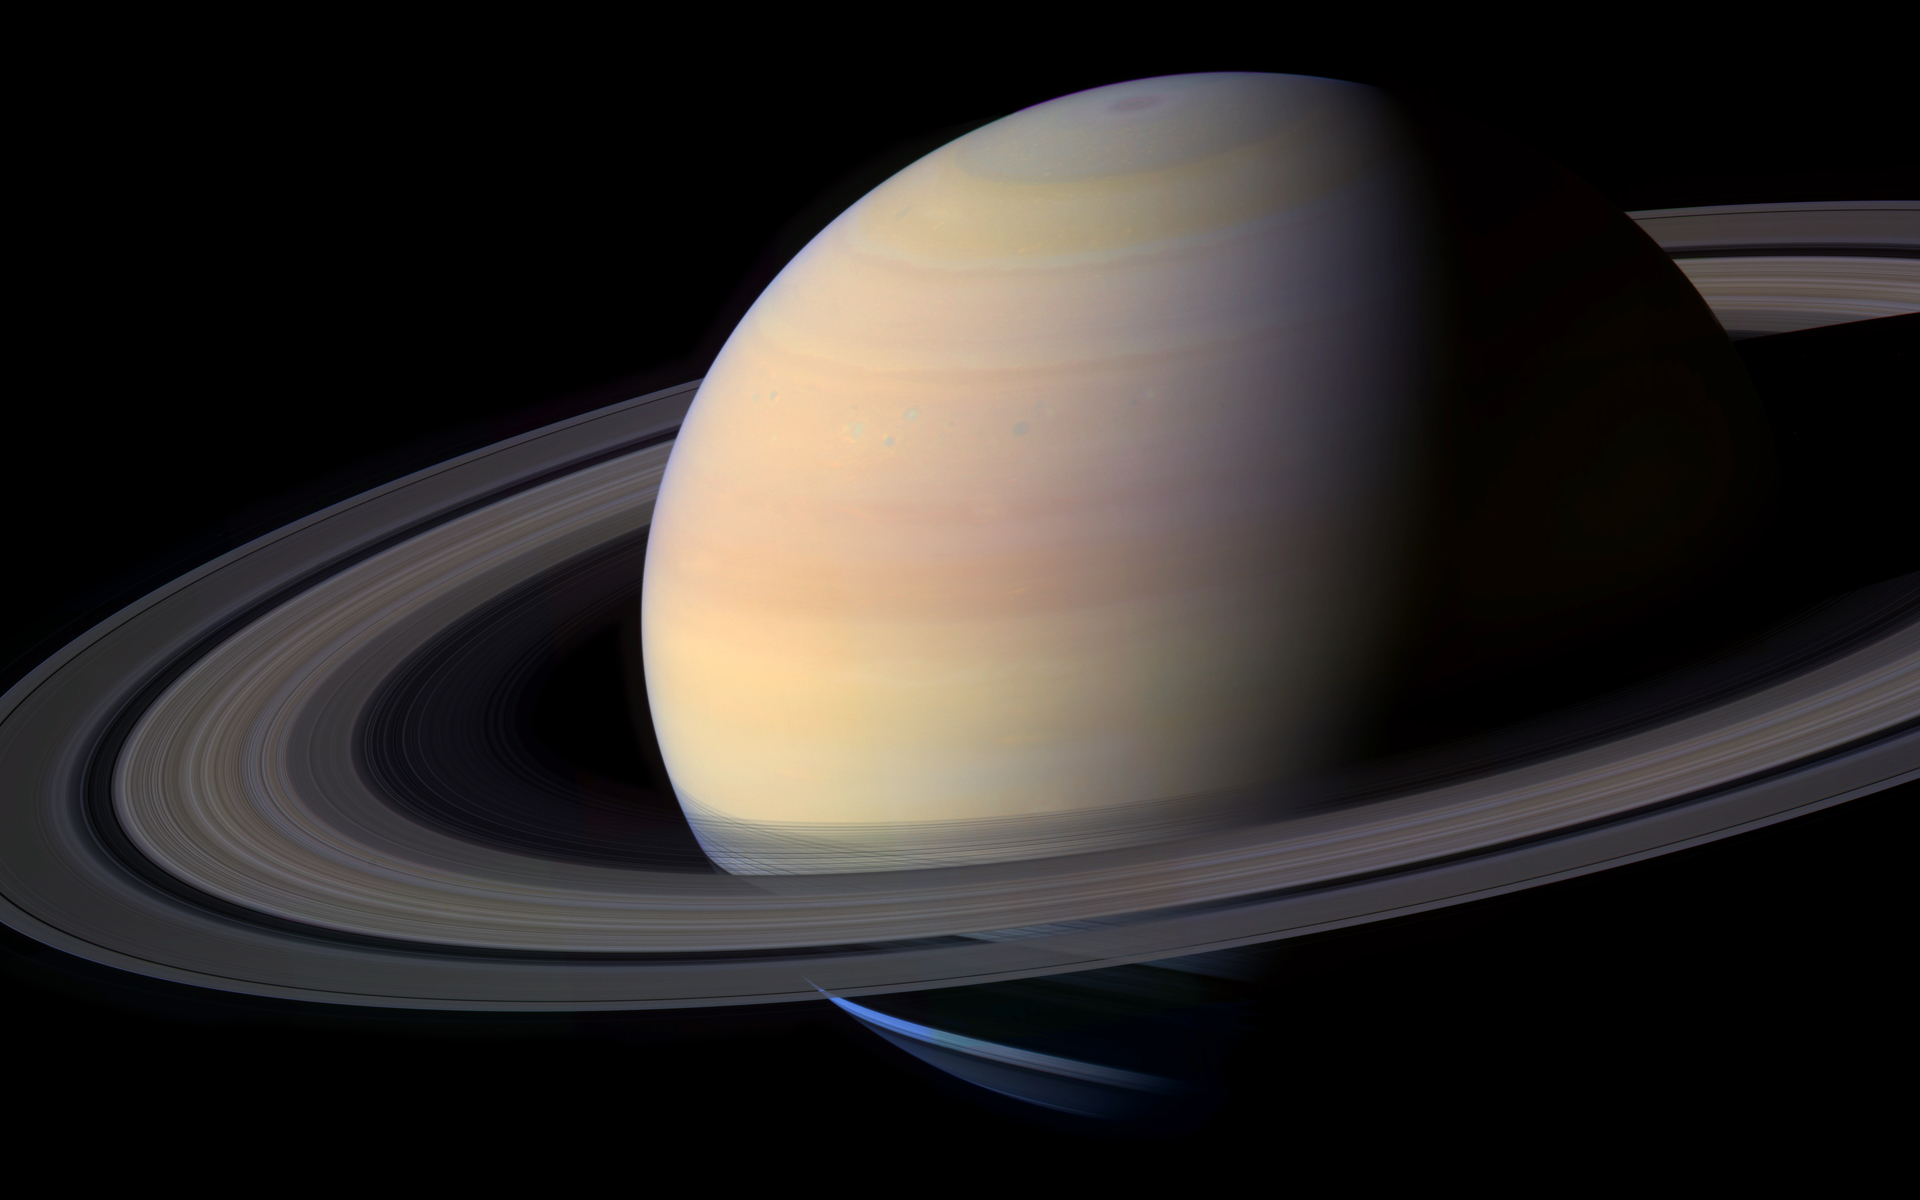 Portrait de Saturne par la sonde Cassinio. © Nasa, JPL-Caltech